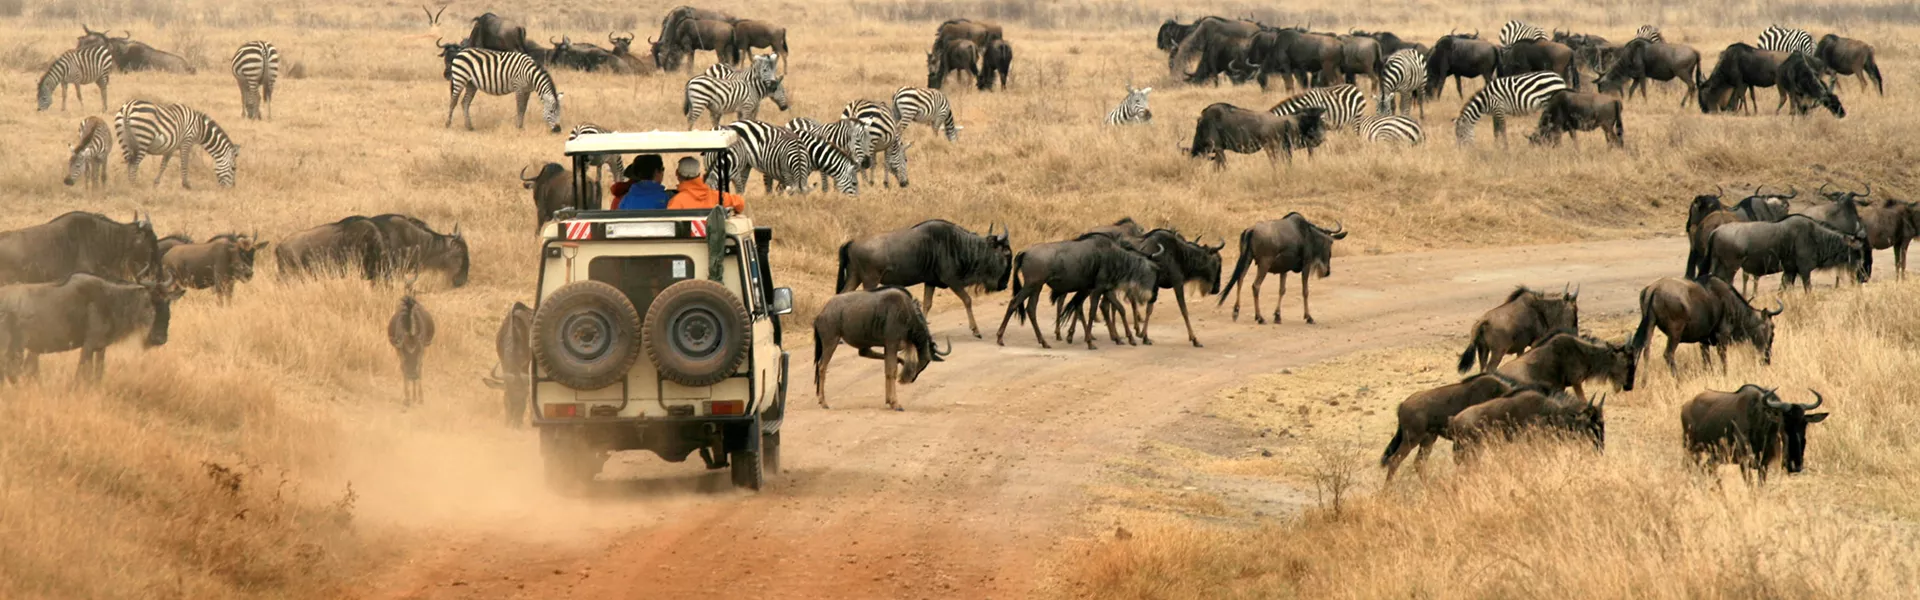 Safari in Ngorongo, Tanzania